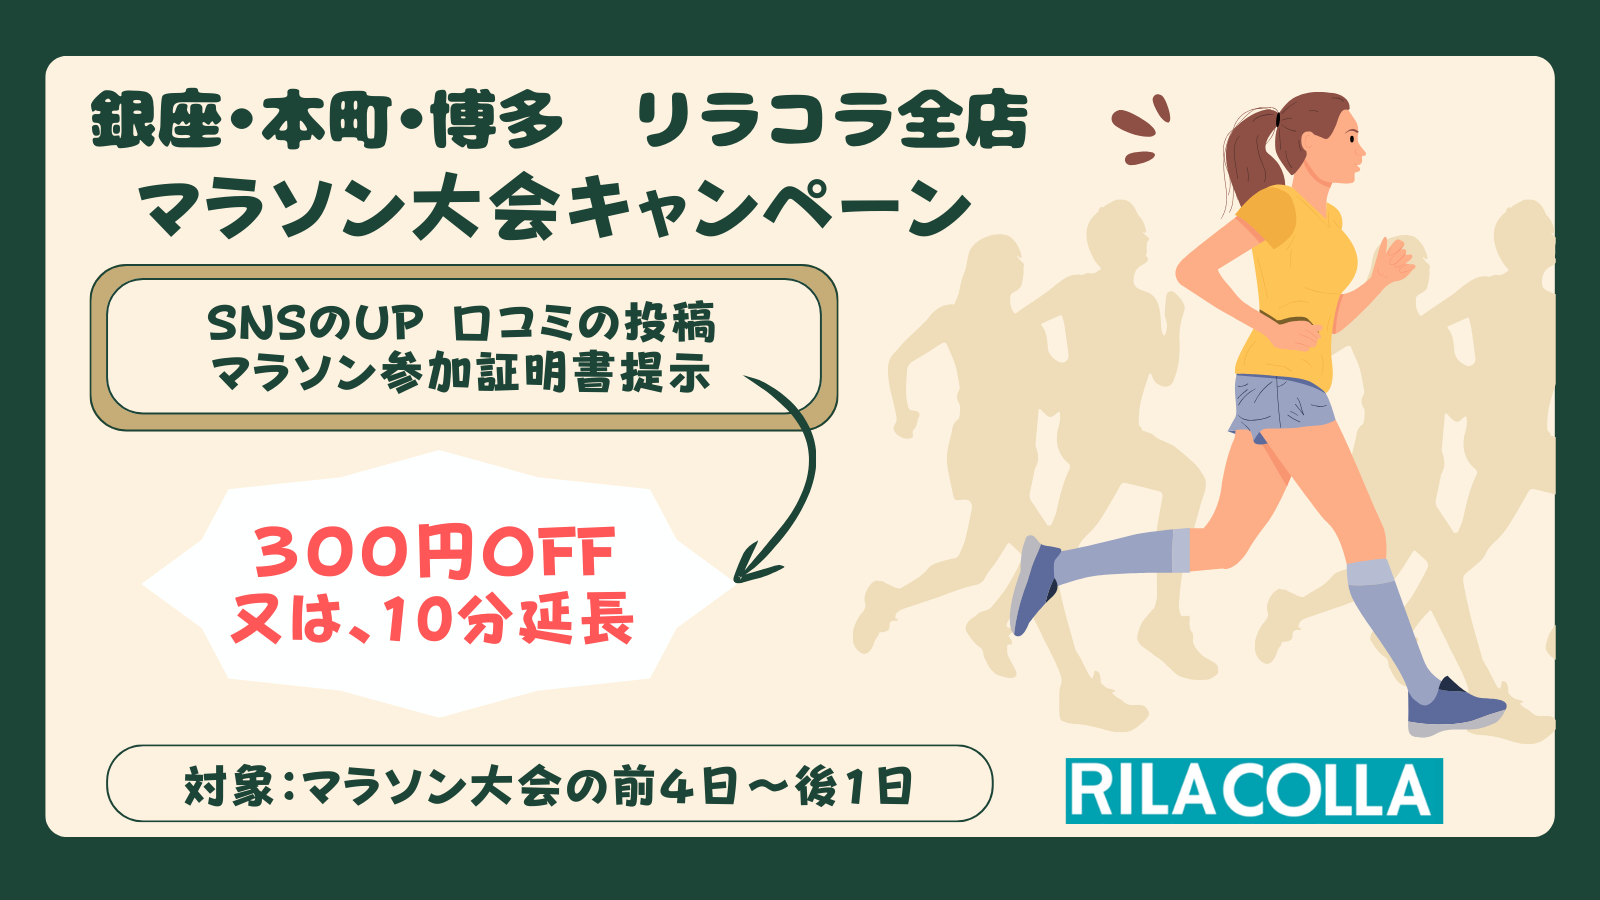 東京・大阪・福岡で酸素カプセル等を提供するサロン　
リラコラ全店にてマラソン大会キャンペーンを開催